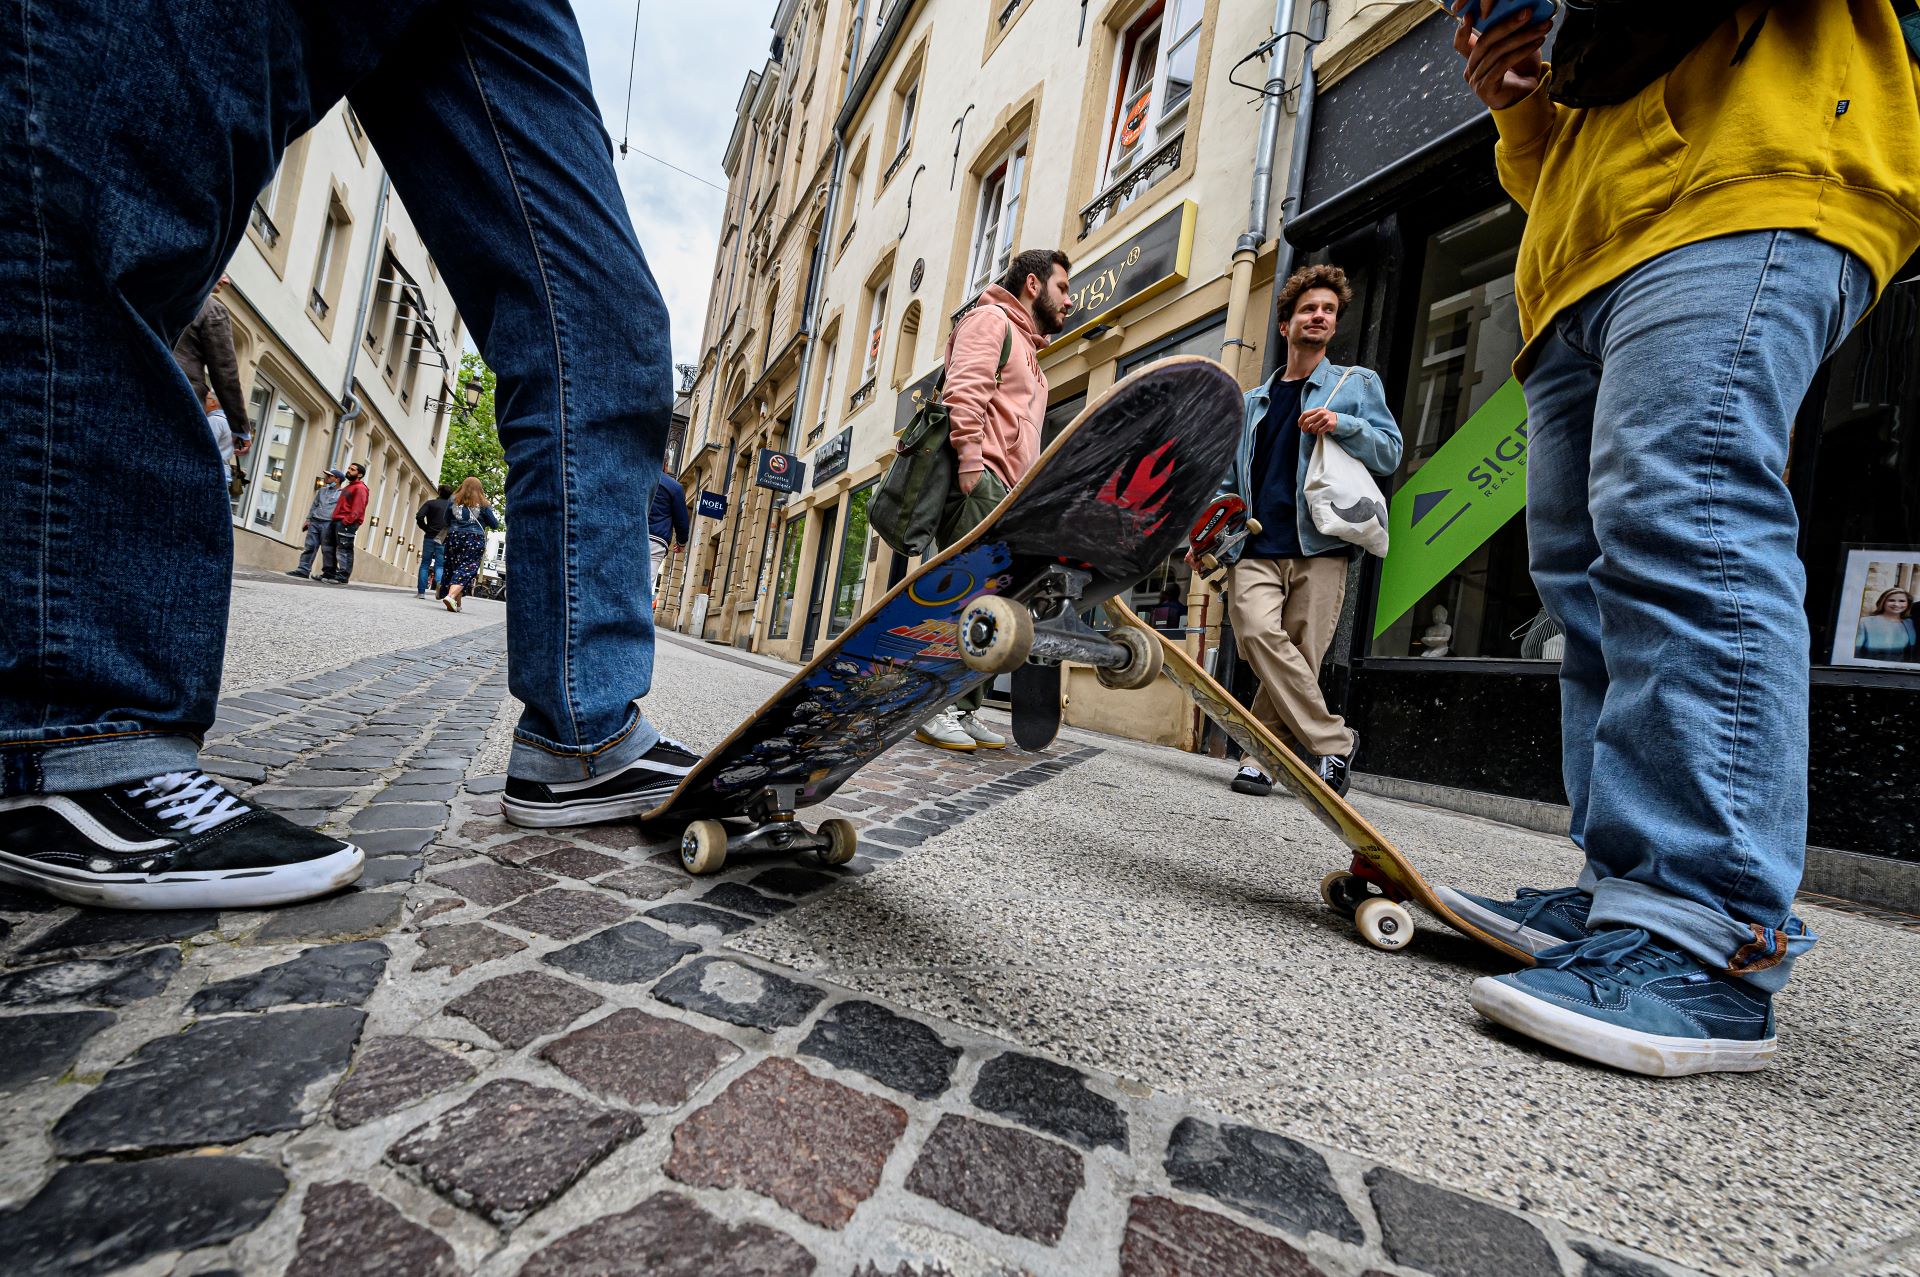 Skateboarder unterhalten sich in einer Straße im Stadtzentrum von Luxemburg. Zwei von ihnen sind außerhalb des Bildes, aber ihre Skateboards sind im Vordergrund zu sehen.